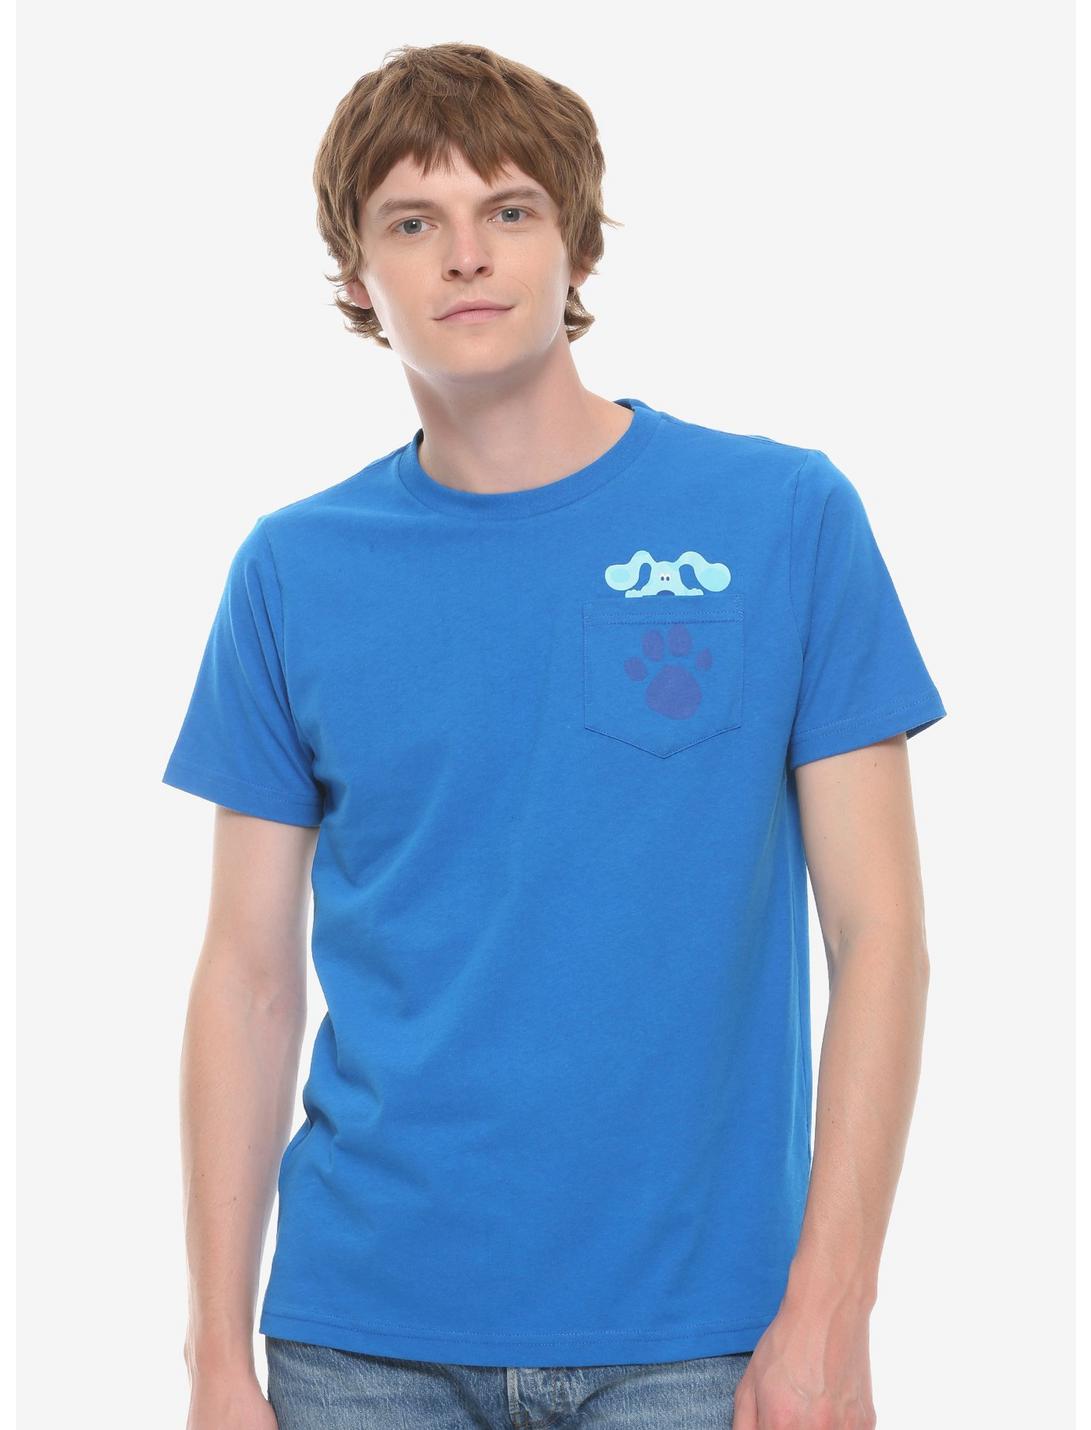 Blue's Clues Pocket T-Shirt, BLUE, hi-res